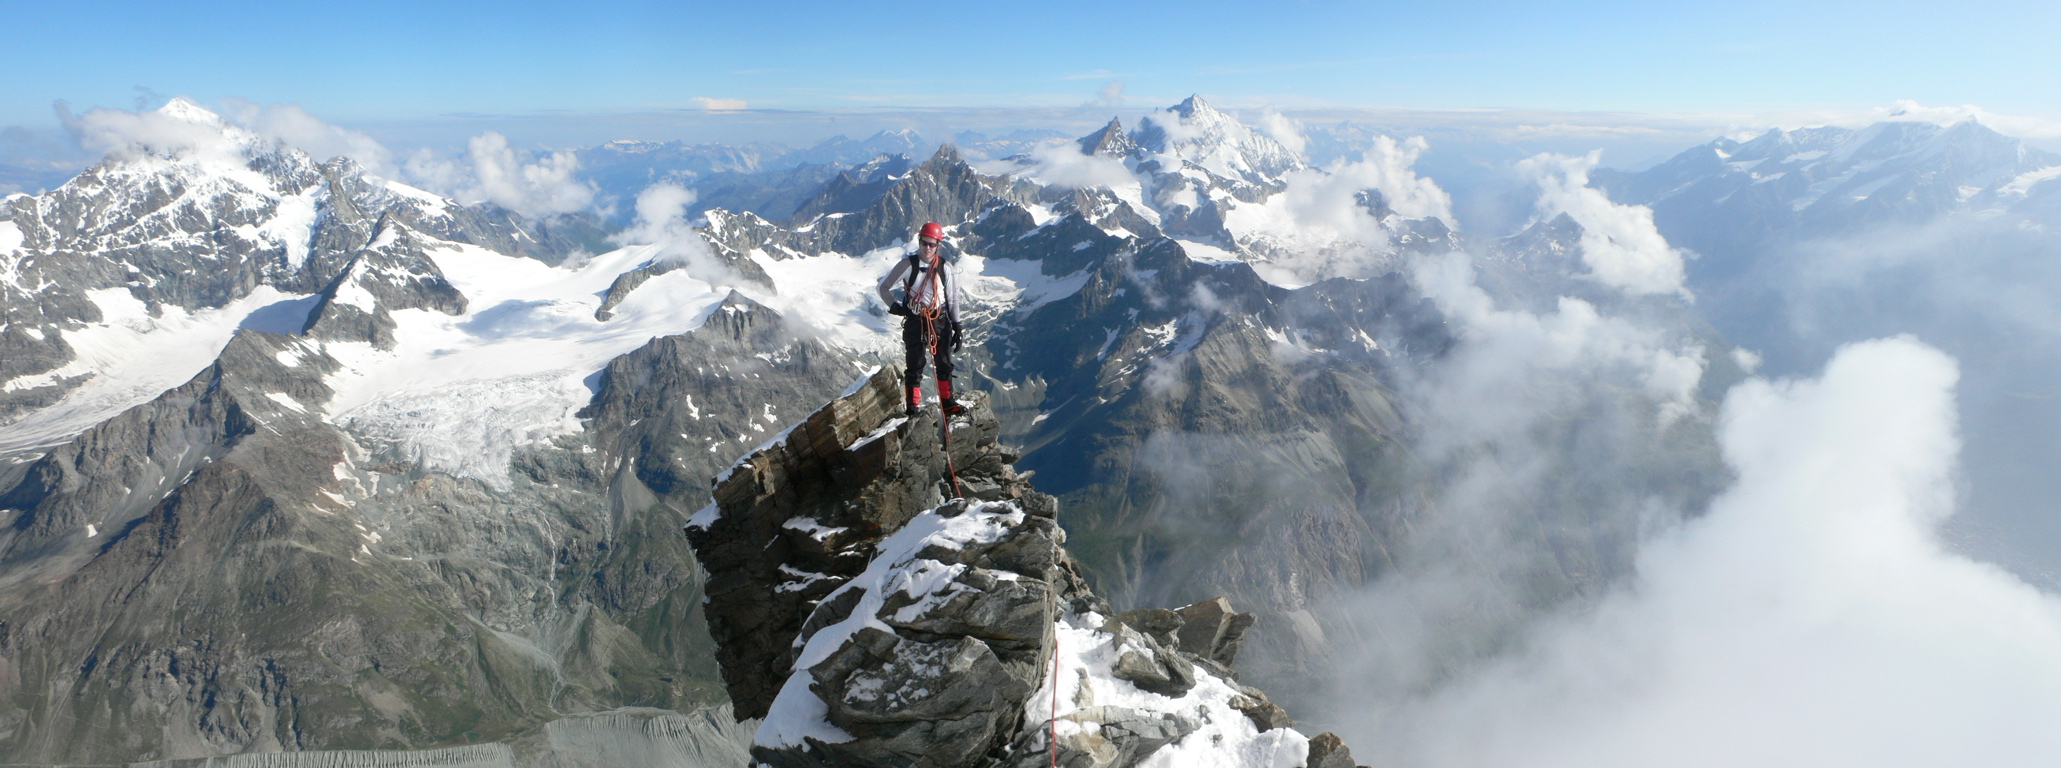 matterhorn climb Der Wanderer The Matterhorn Photography